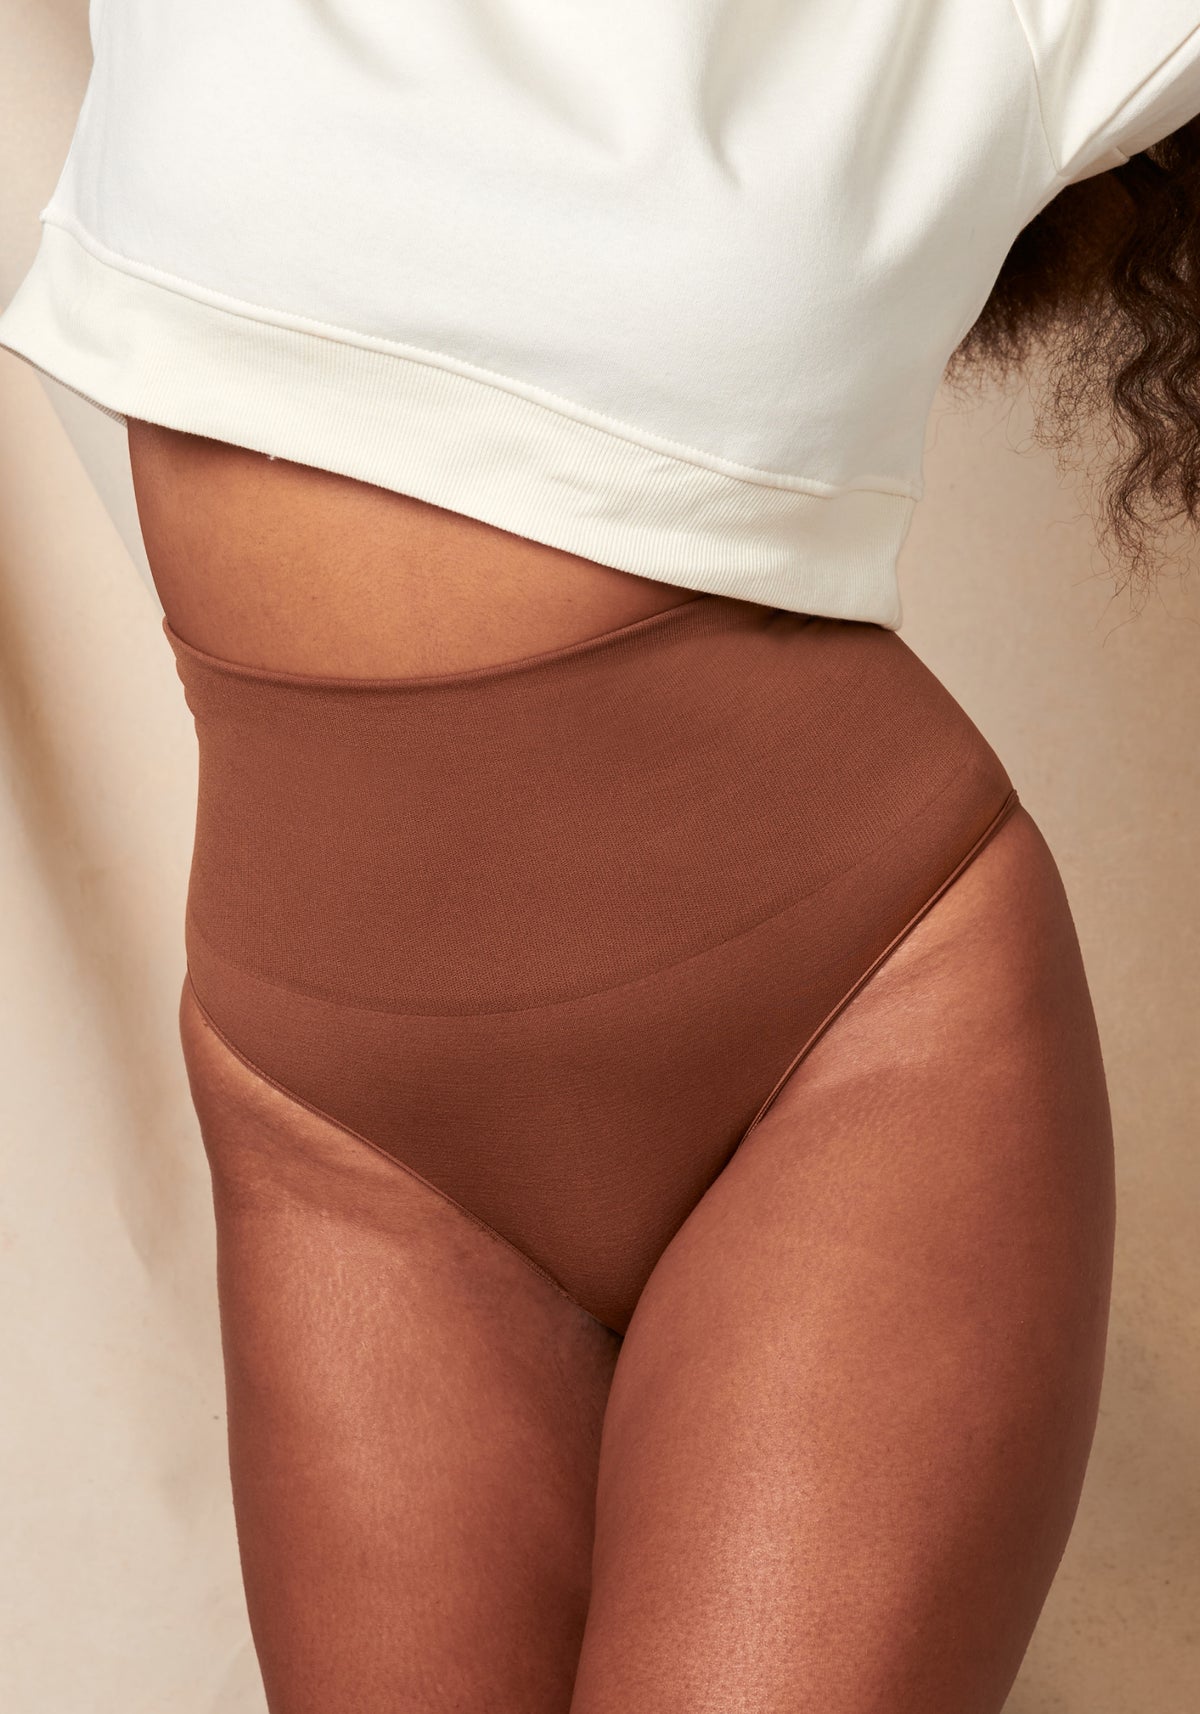 Ctm Women's Seamless Boyshort Underwear, Large, Blush : Target